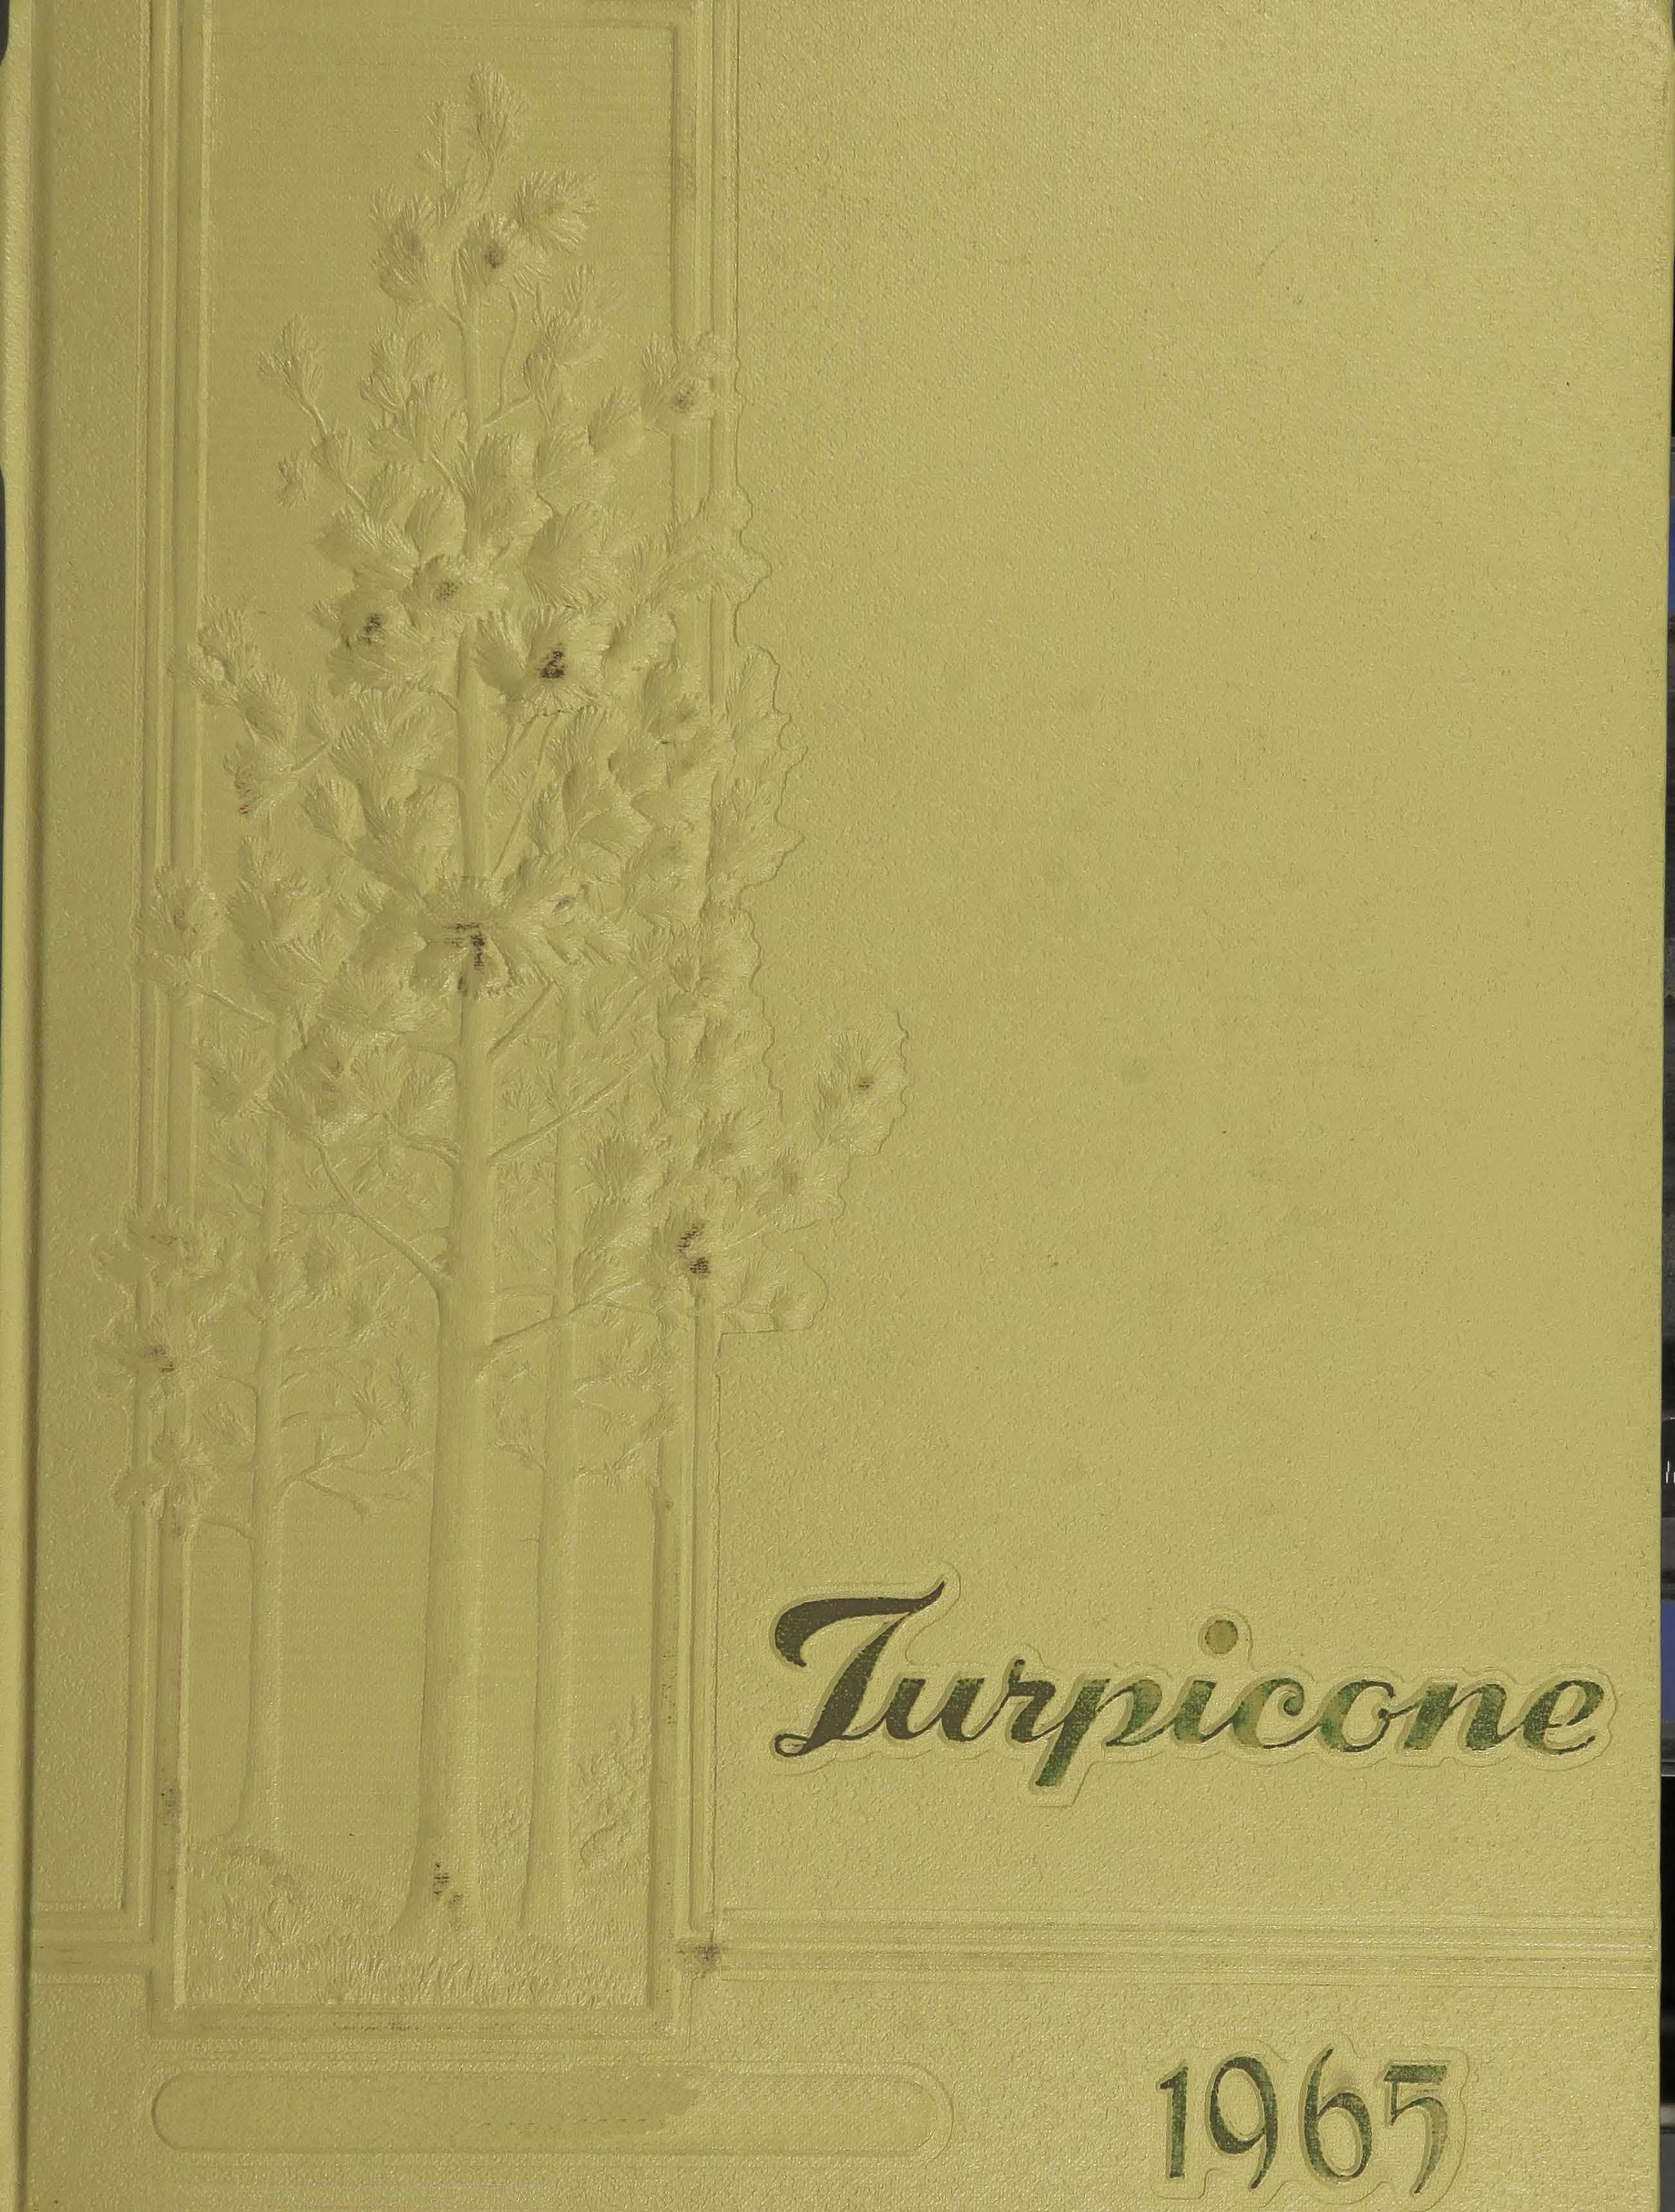 Turpicone 1965